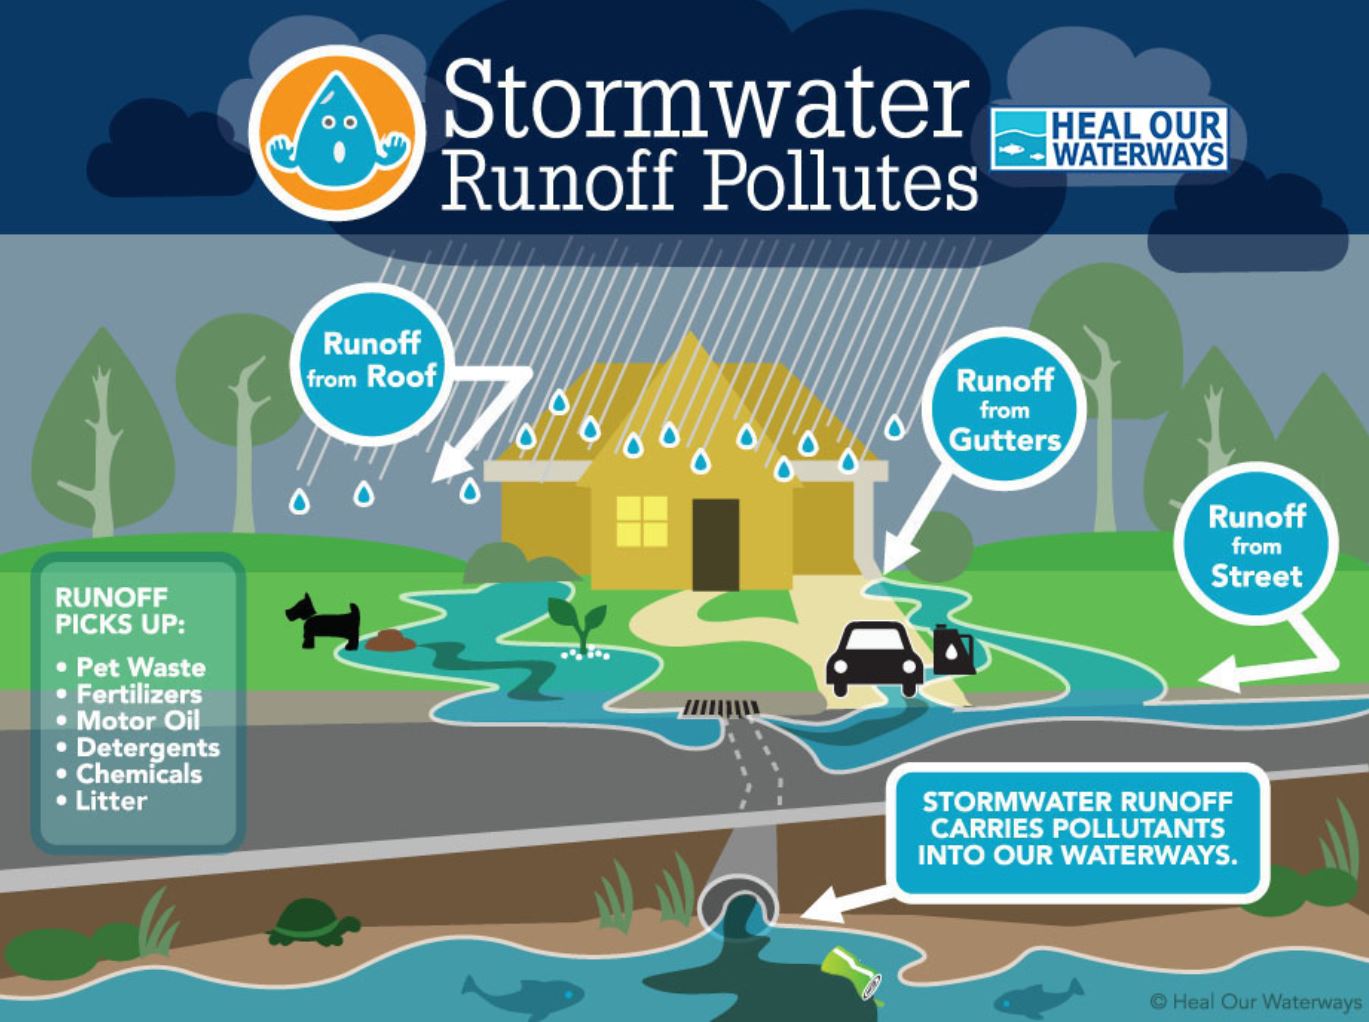 stormwater runoff pollution